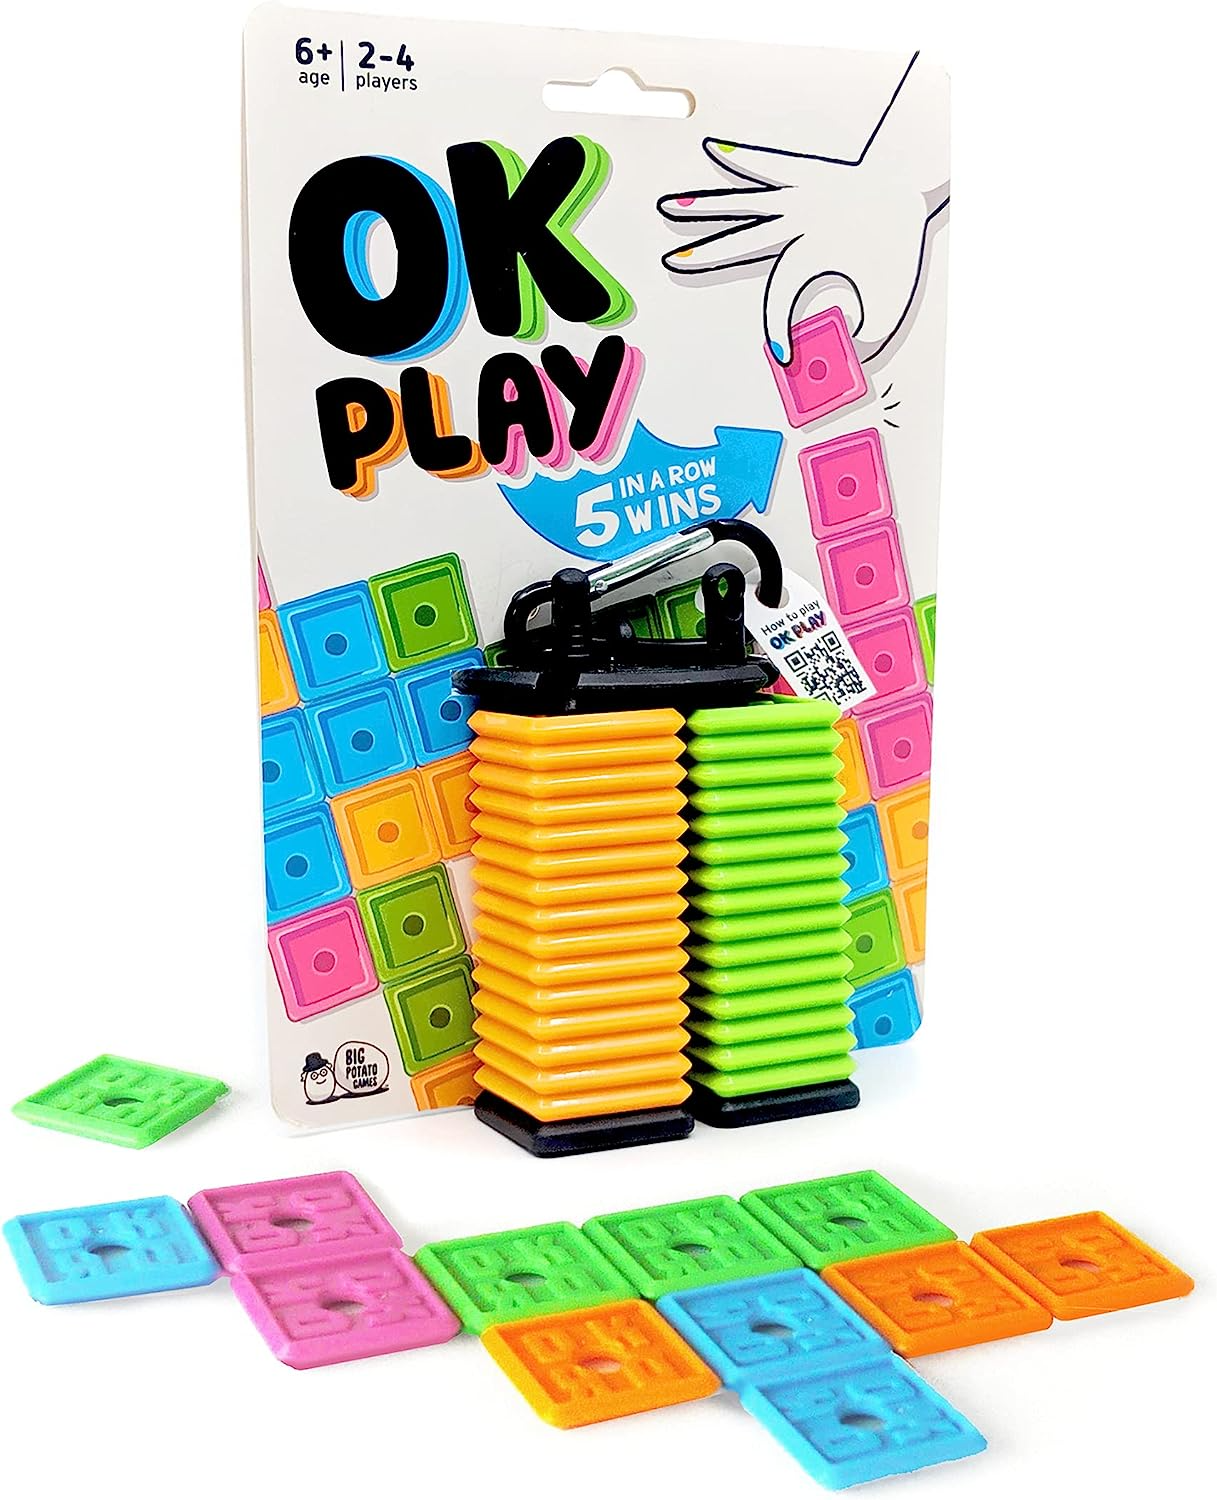 OK Play [New] | Yard's Games Ltd